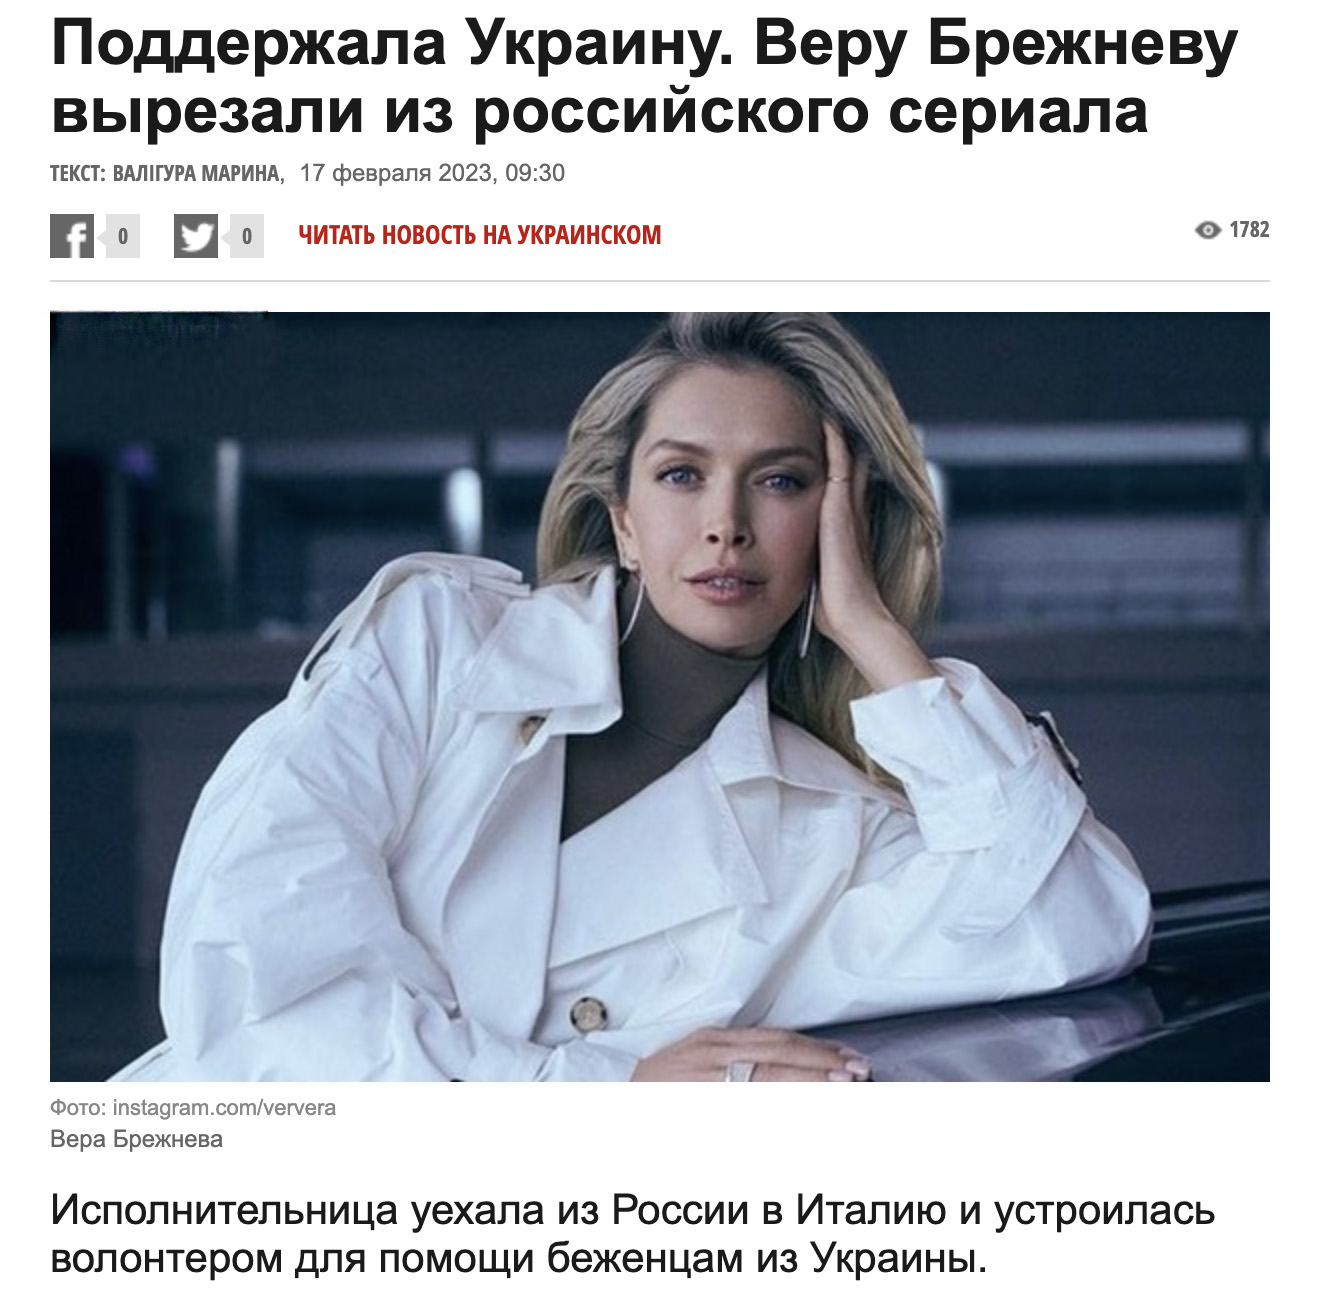 В отличие от Светланы Лободы, украинская пресса благоволит Брежневой. Скрин © korrespondent.net